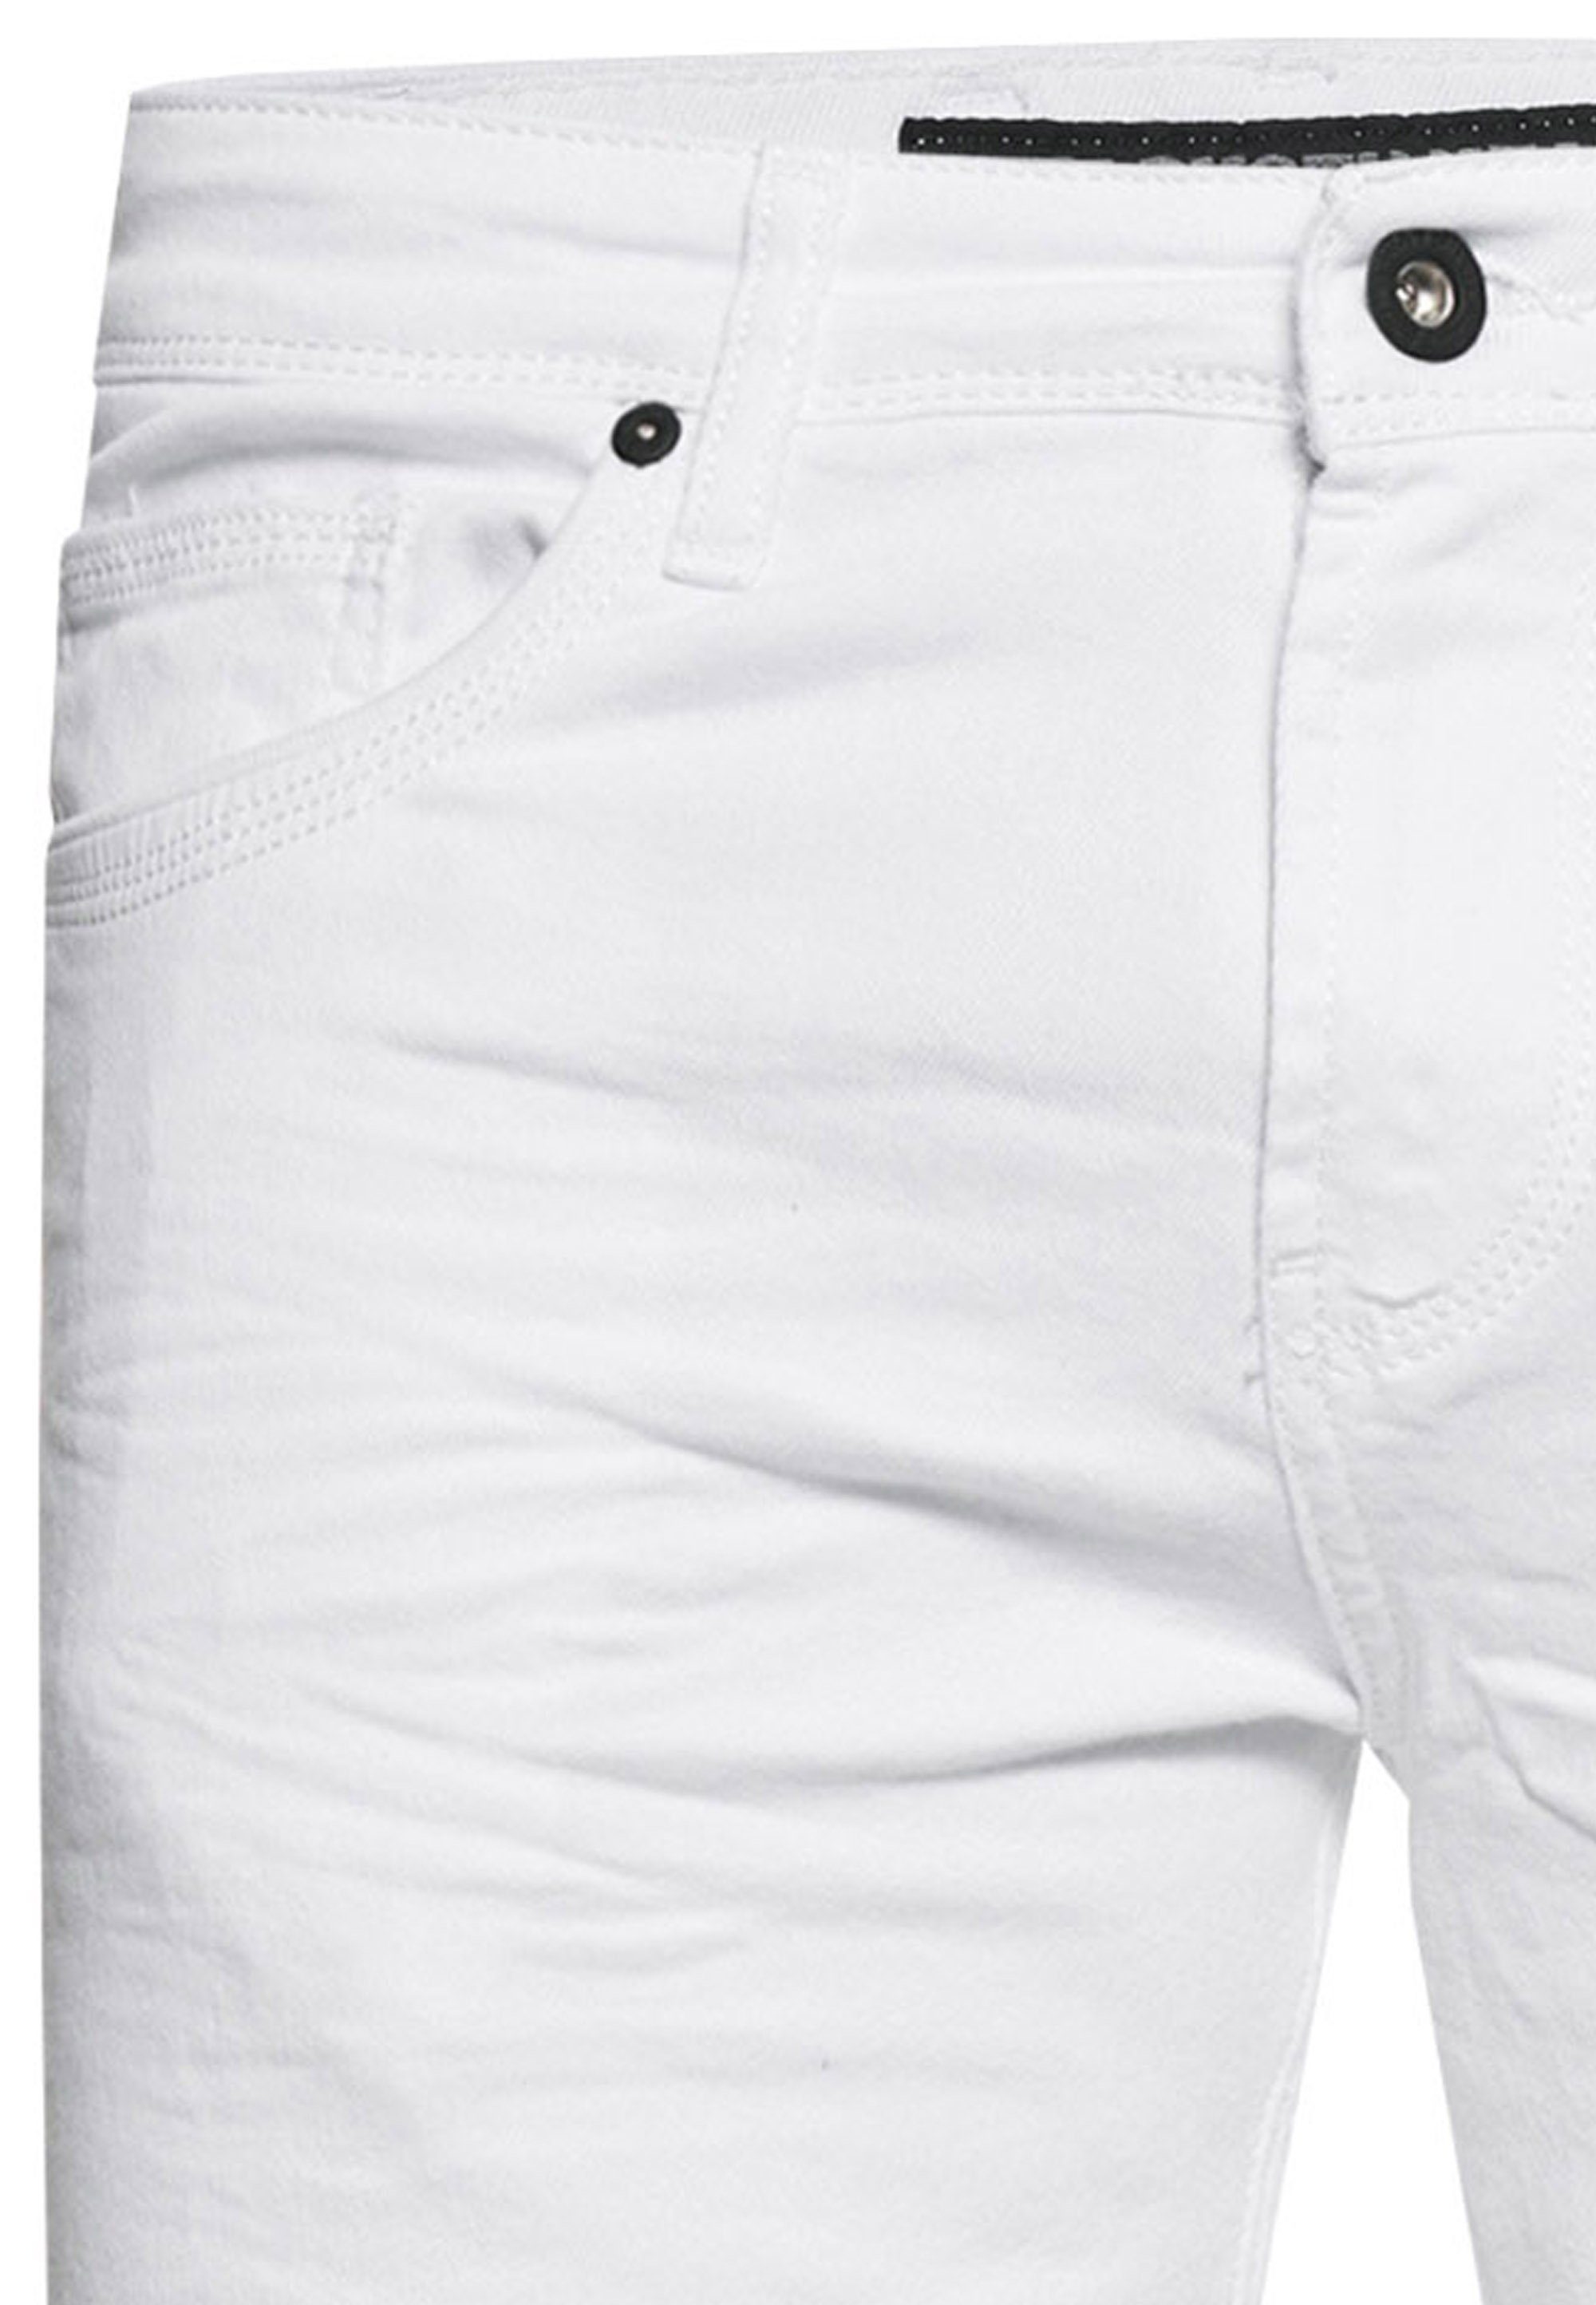 Rusty Neal Straight-Jeans MELVIN weiß 5-Pocket-Stil im klassischen